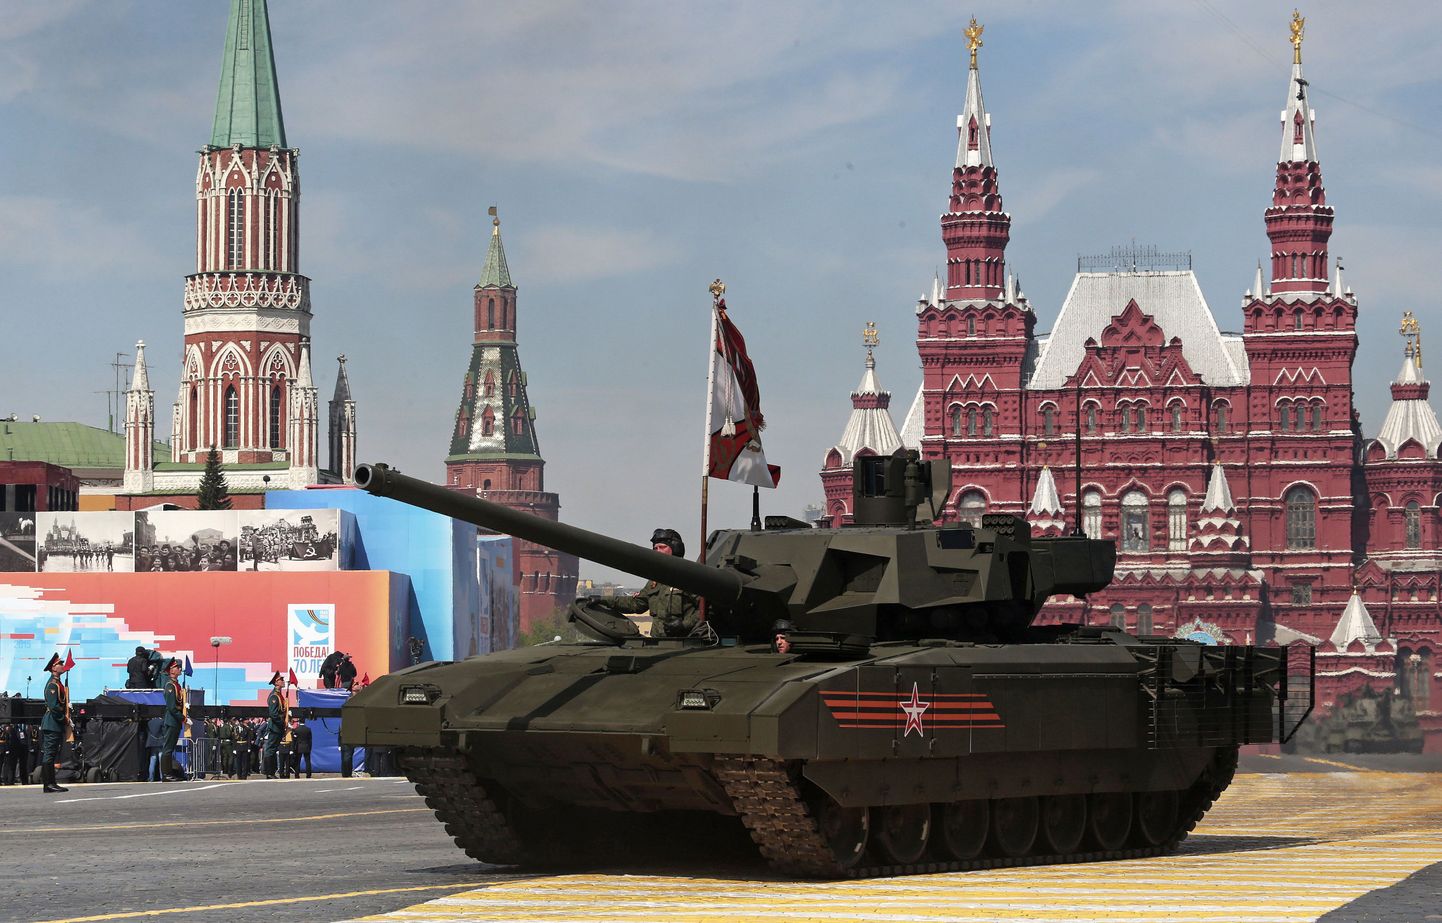 Vene Armata tank möödunud kuul Moskvas võidupüha paraadil.